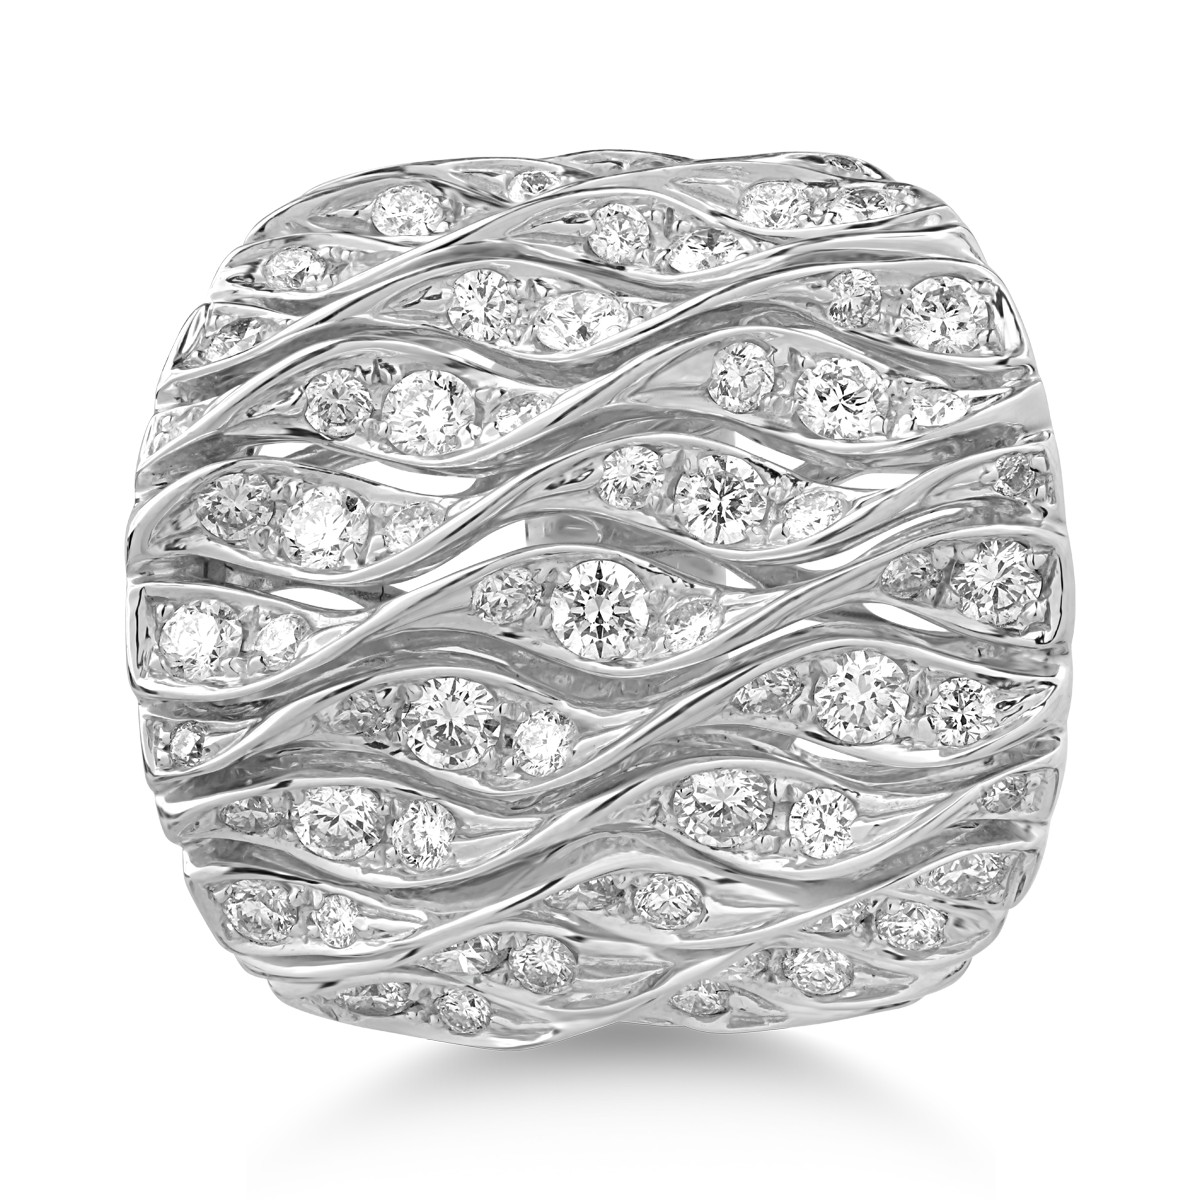 18K fehérarany gyűrű 2,60 karátos gyémántokkal